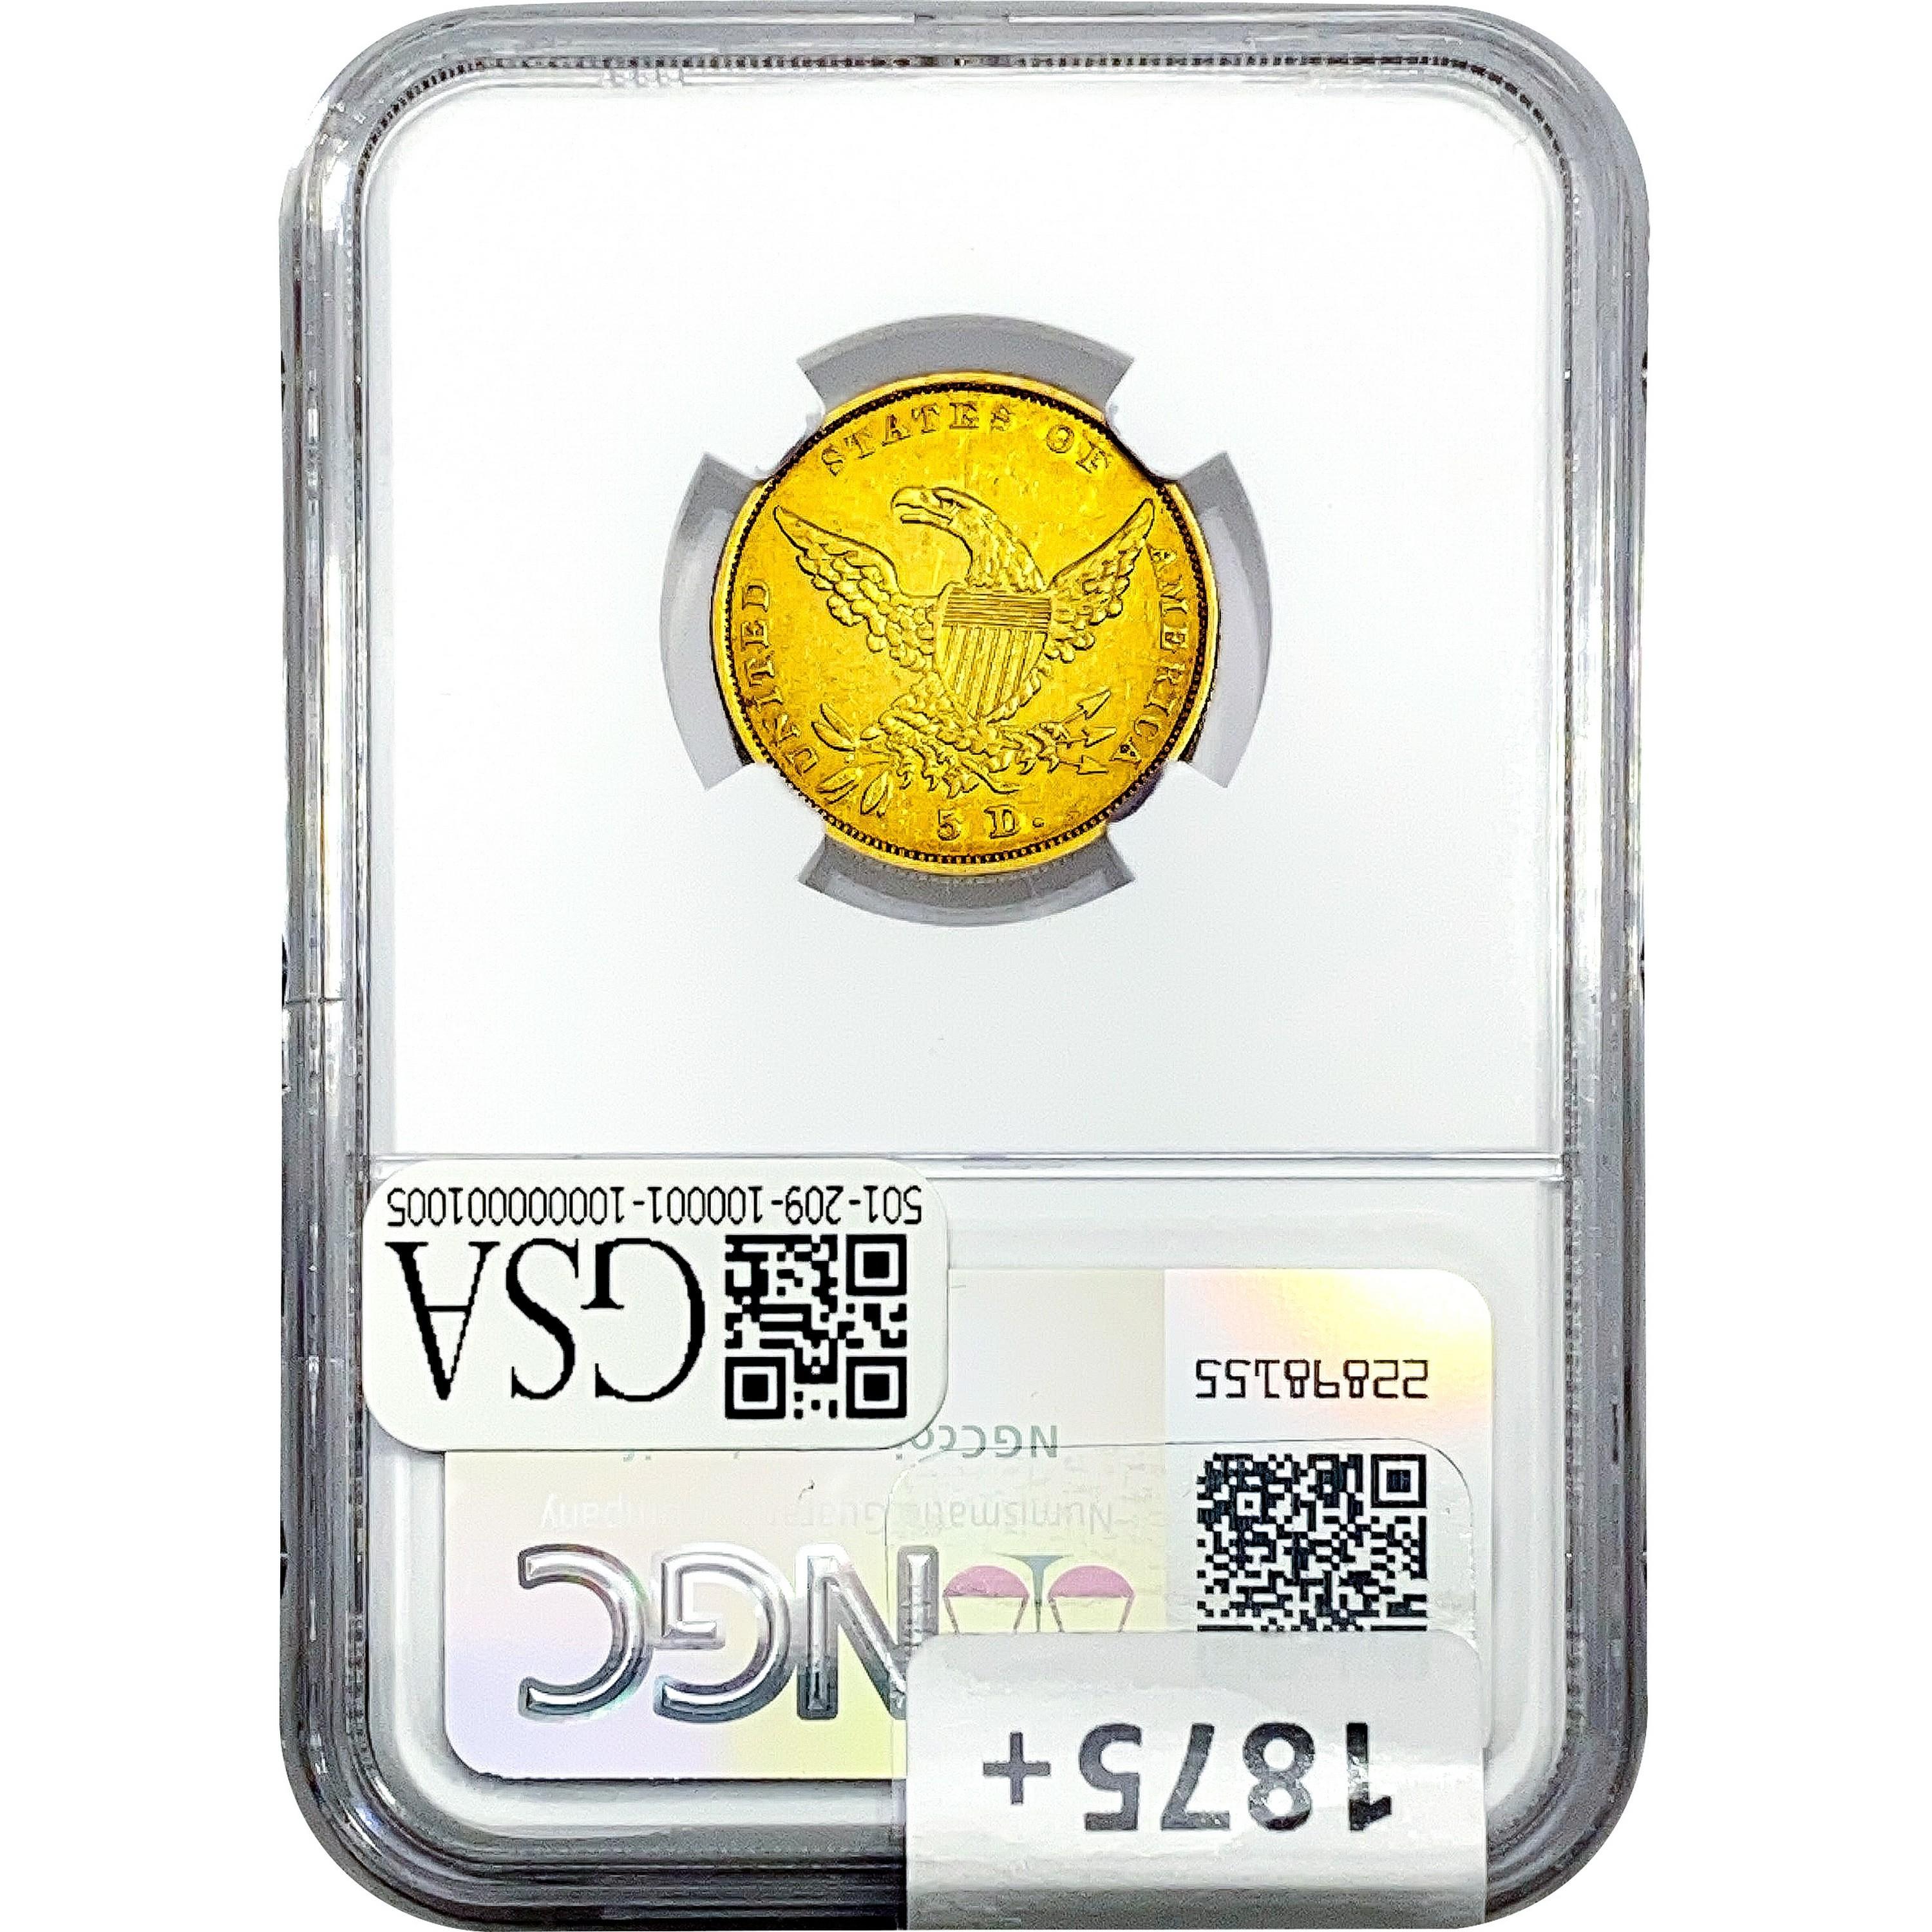 1836 $5 Gold Half Eagle NGC XF45